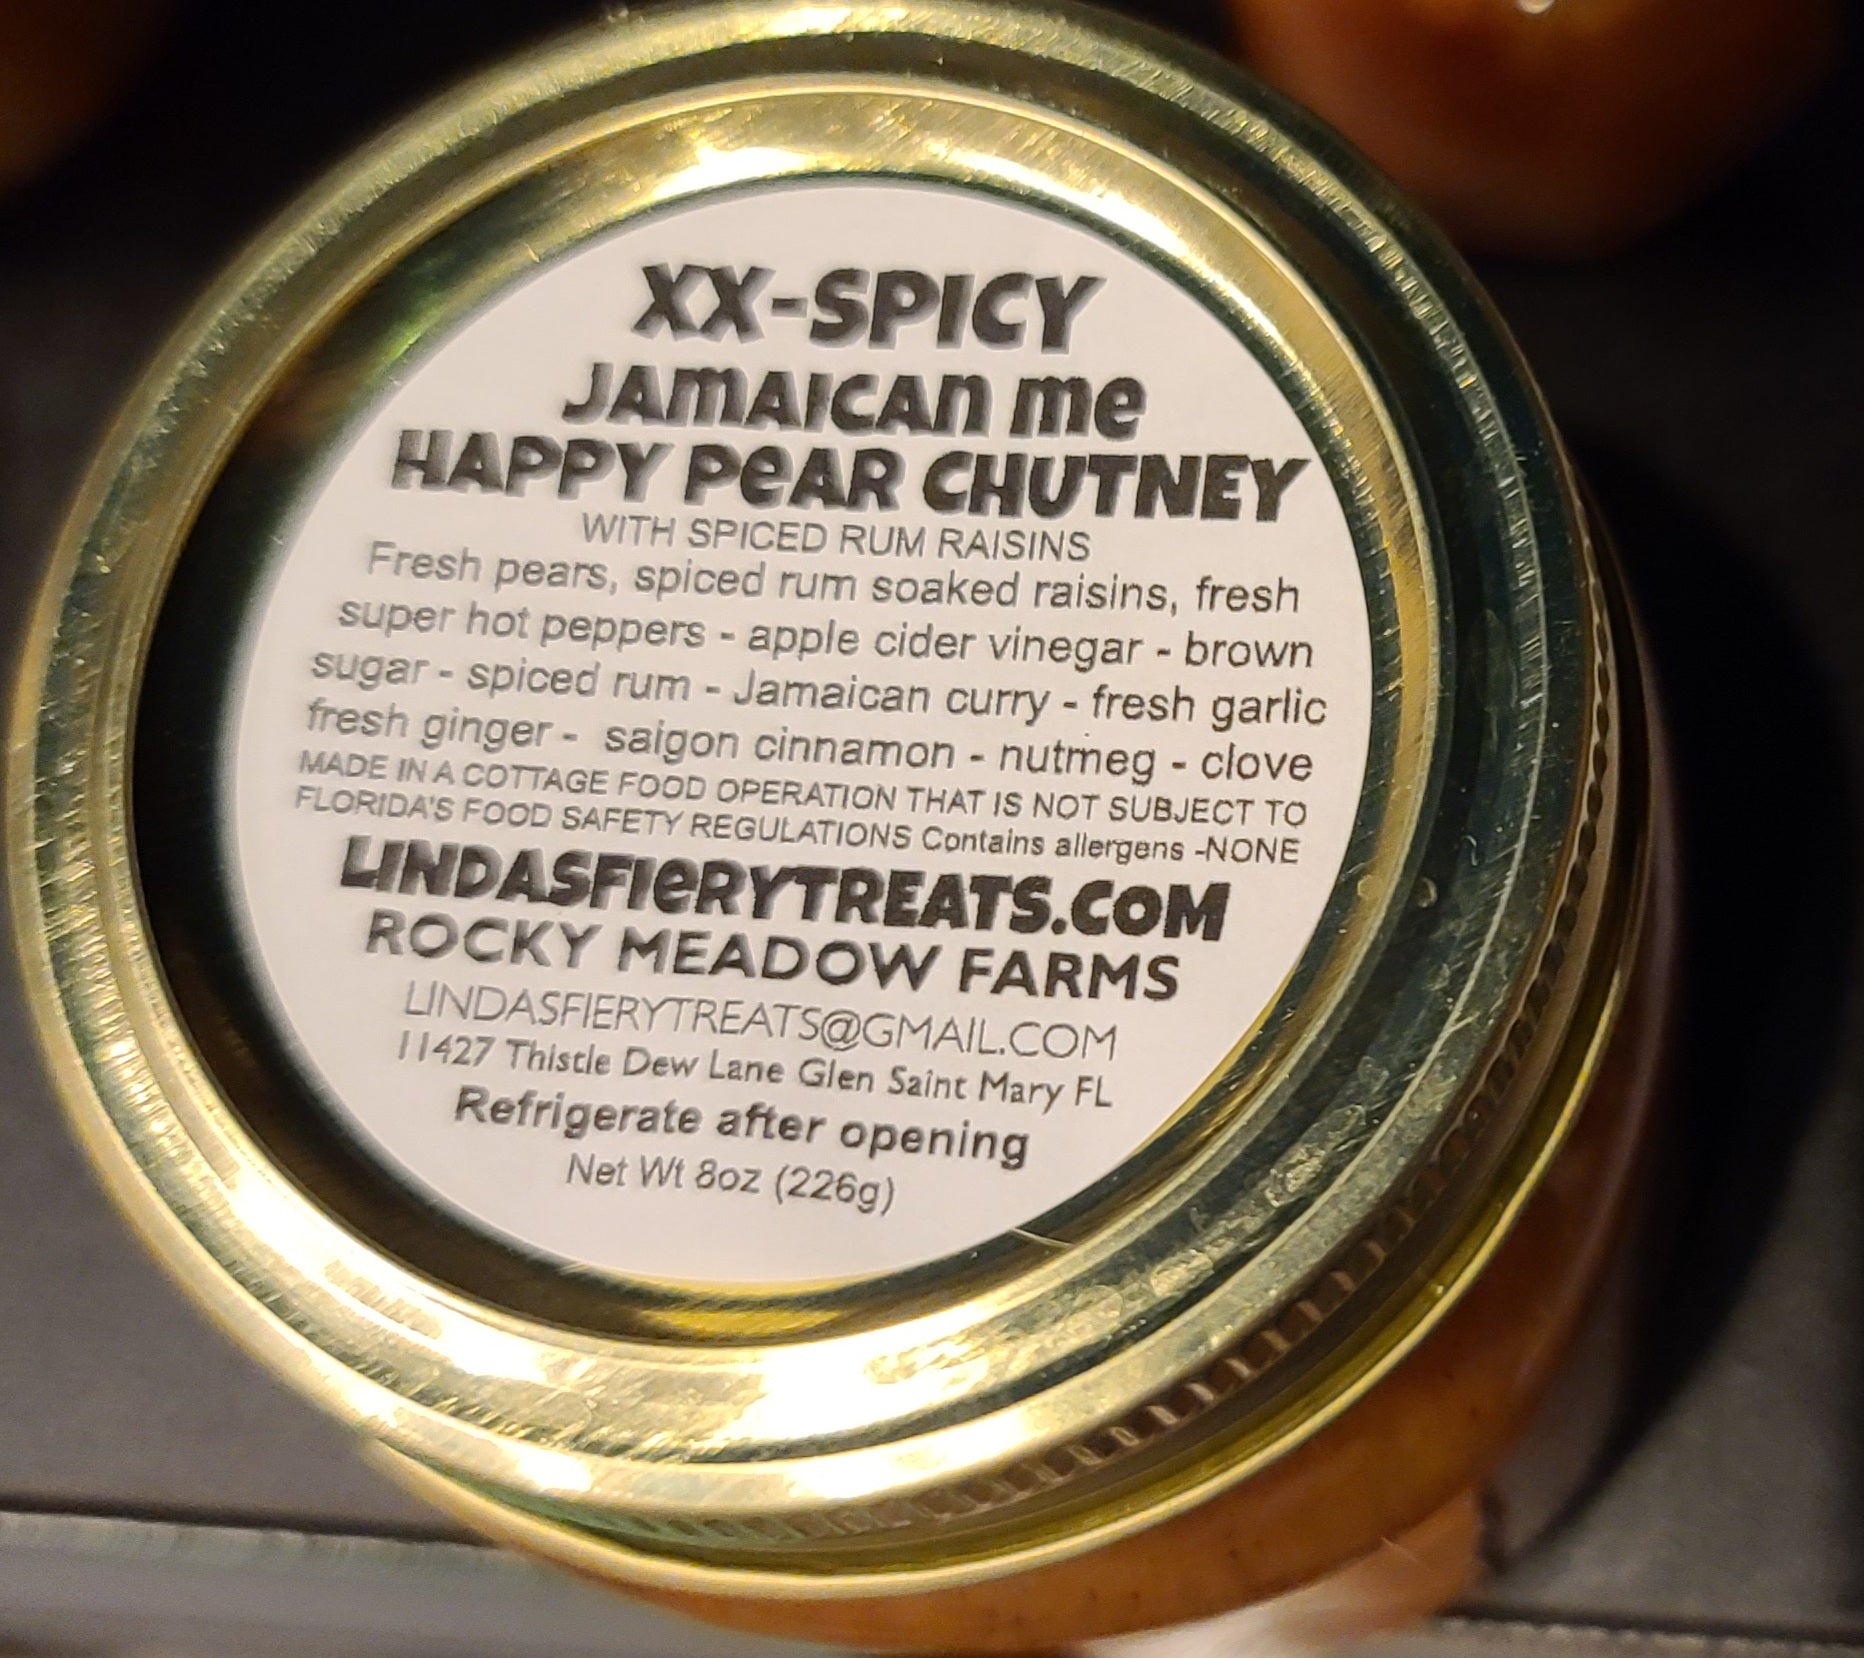 CHUTNEY - XX-Spicy Jamaican me happy pear chutney